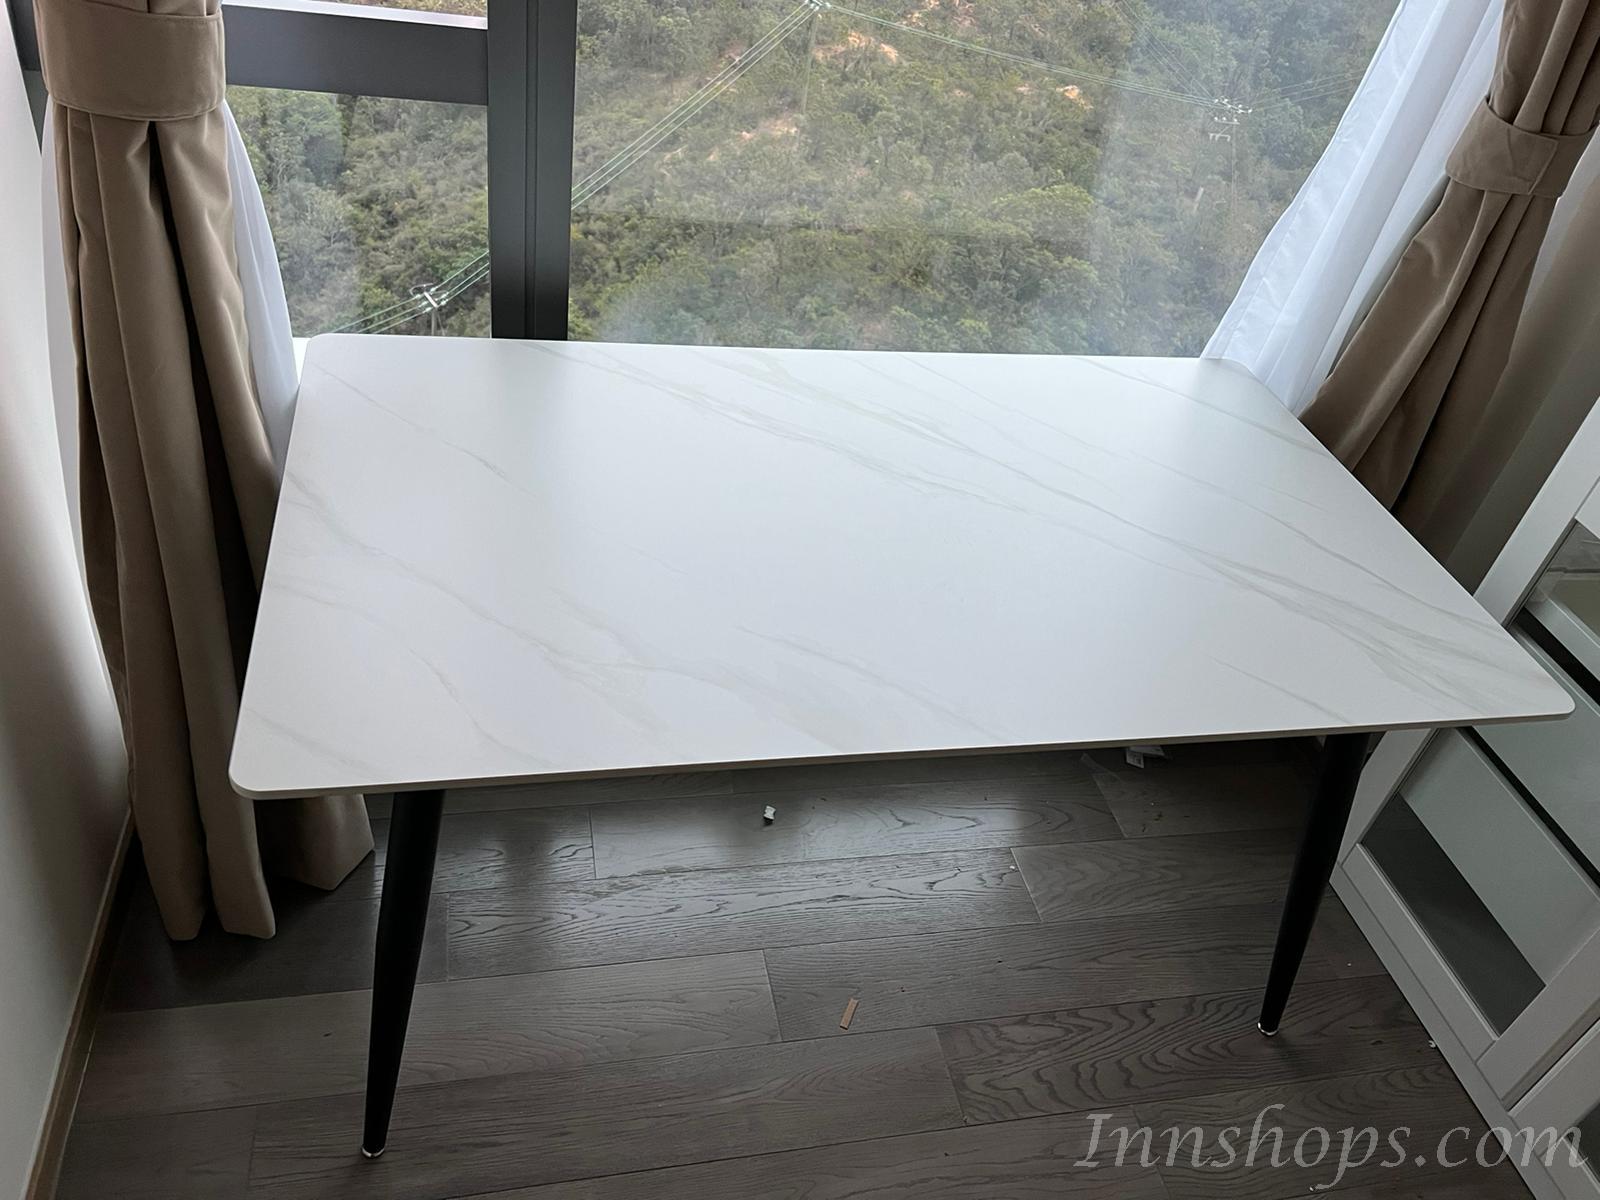 北歐系列岩板輕奢餐枱餐桌椅組合*120/140cm (IS7561)